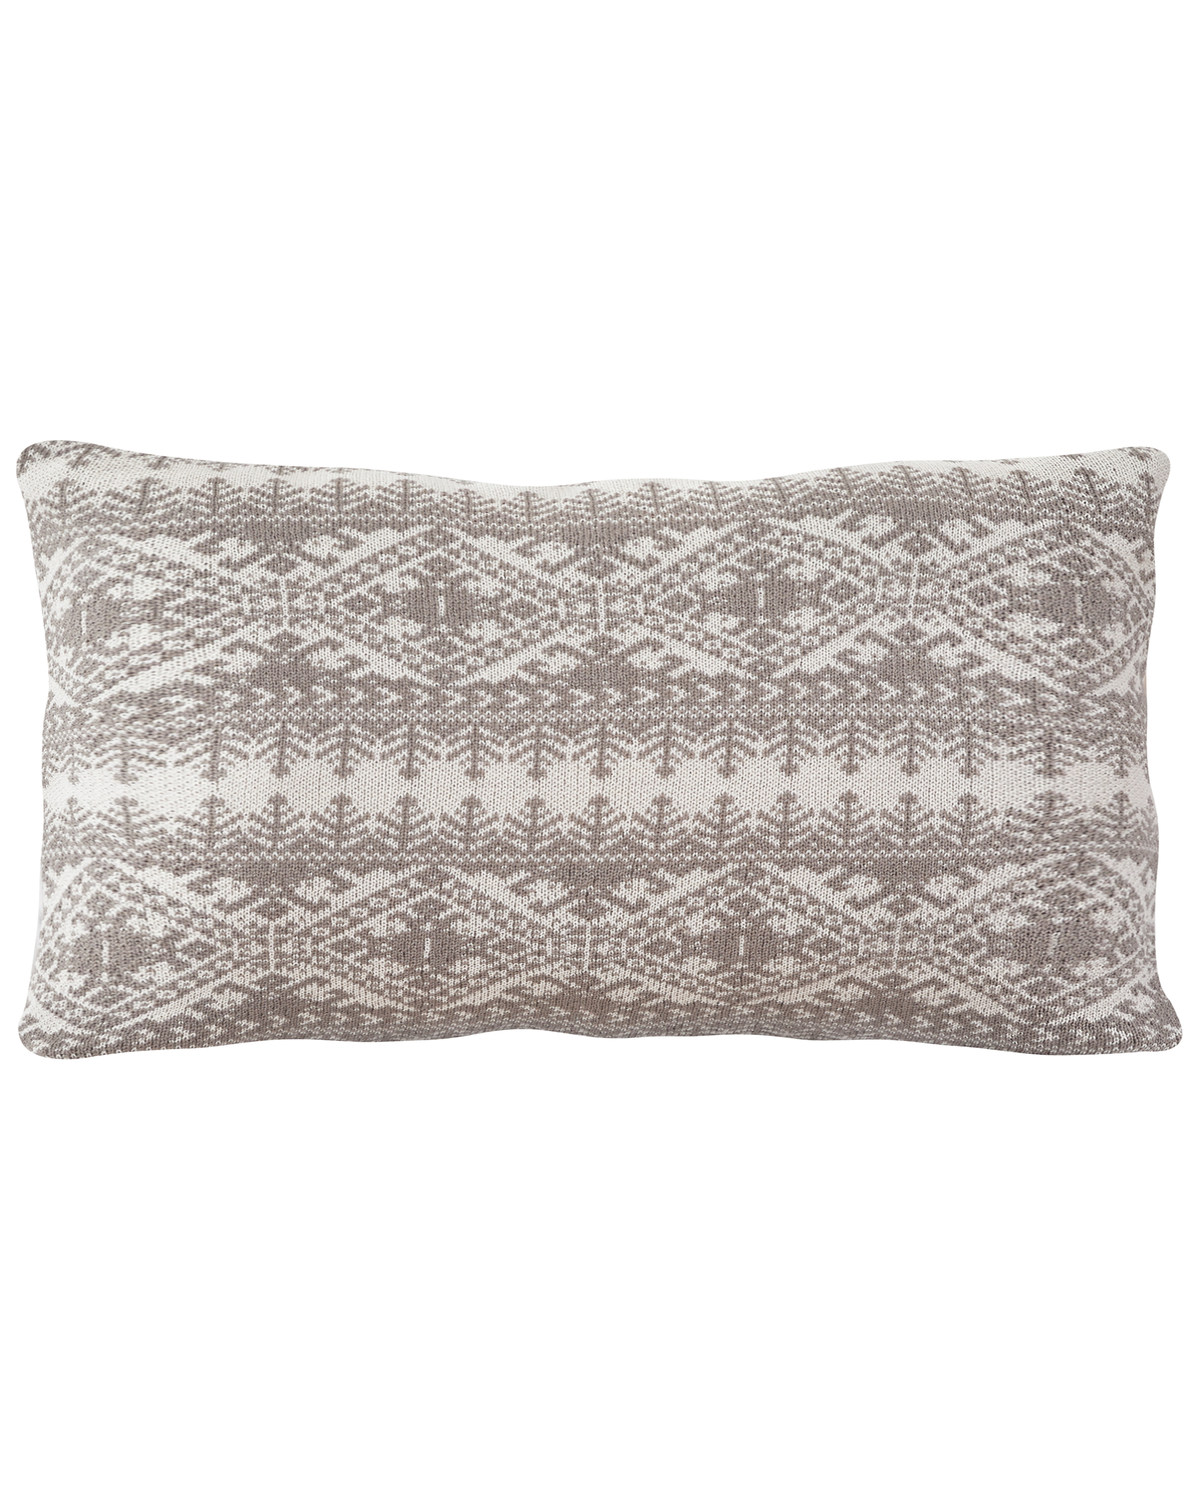 HiEnd Accents Fair Isle Knit Body Pillow